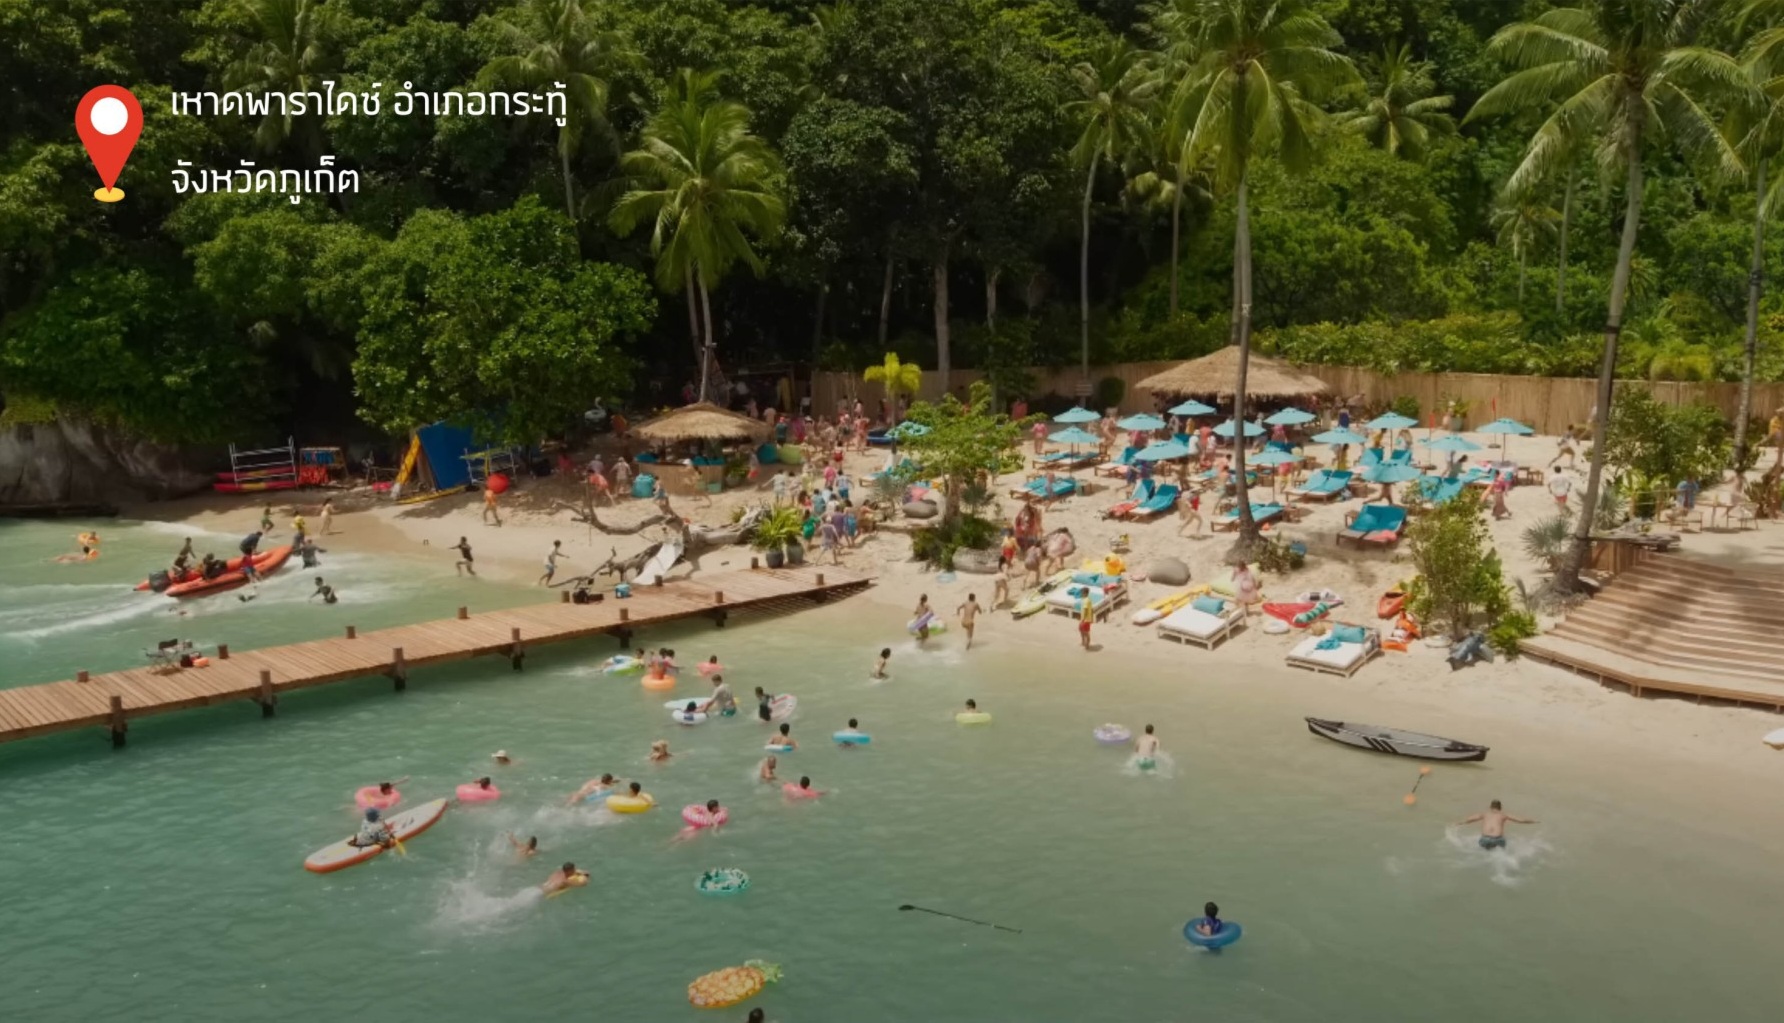 หนังฟอร์มยักษ์ "The Meg 2 : The Trench" ที่ได้รับ Incentive ประเทศไทย  สร้างรายได้กระหึ่มโลก - สำนักข่าวไทยมุง